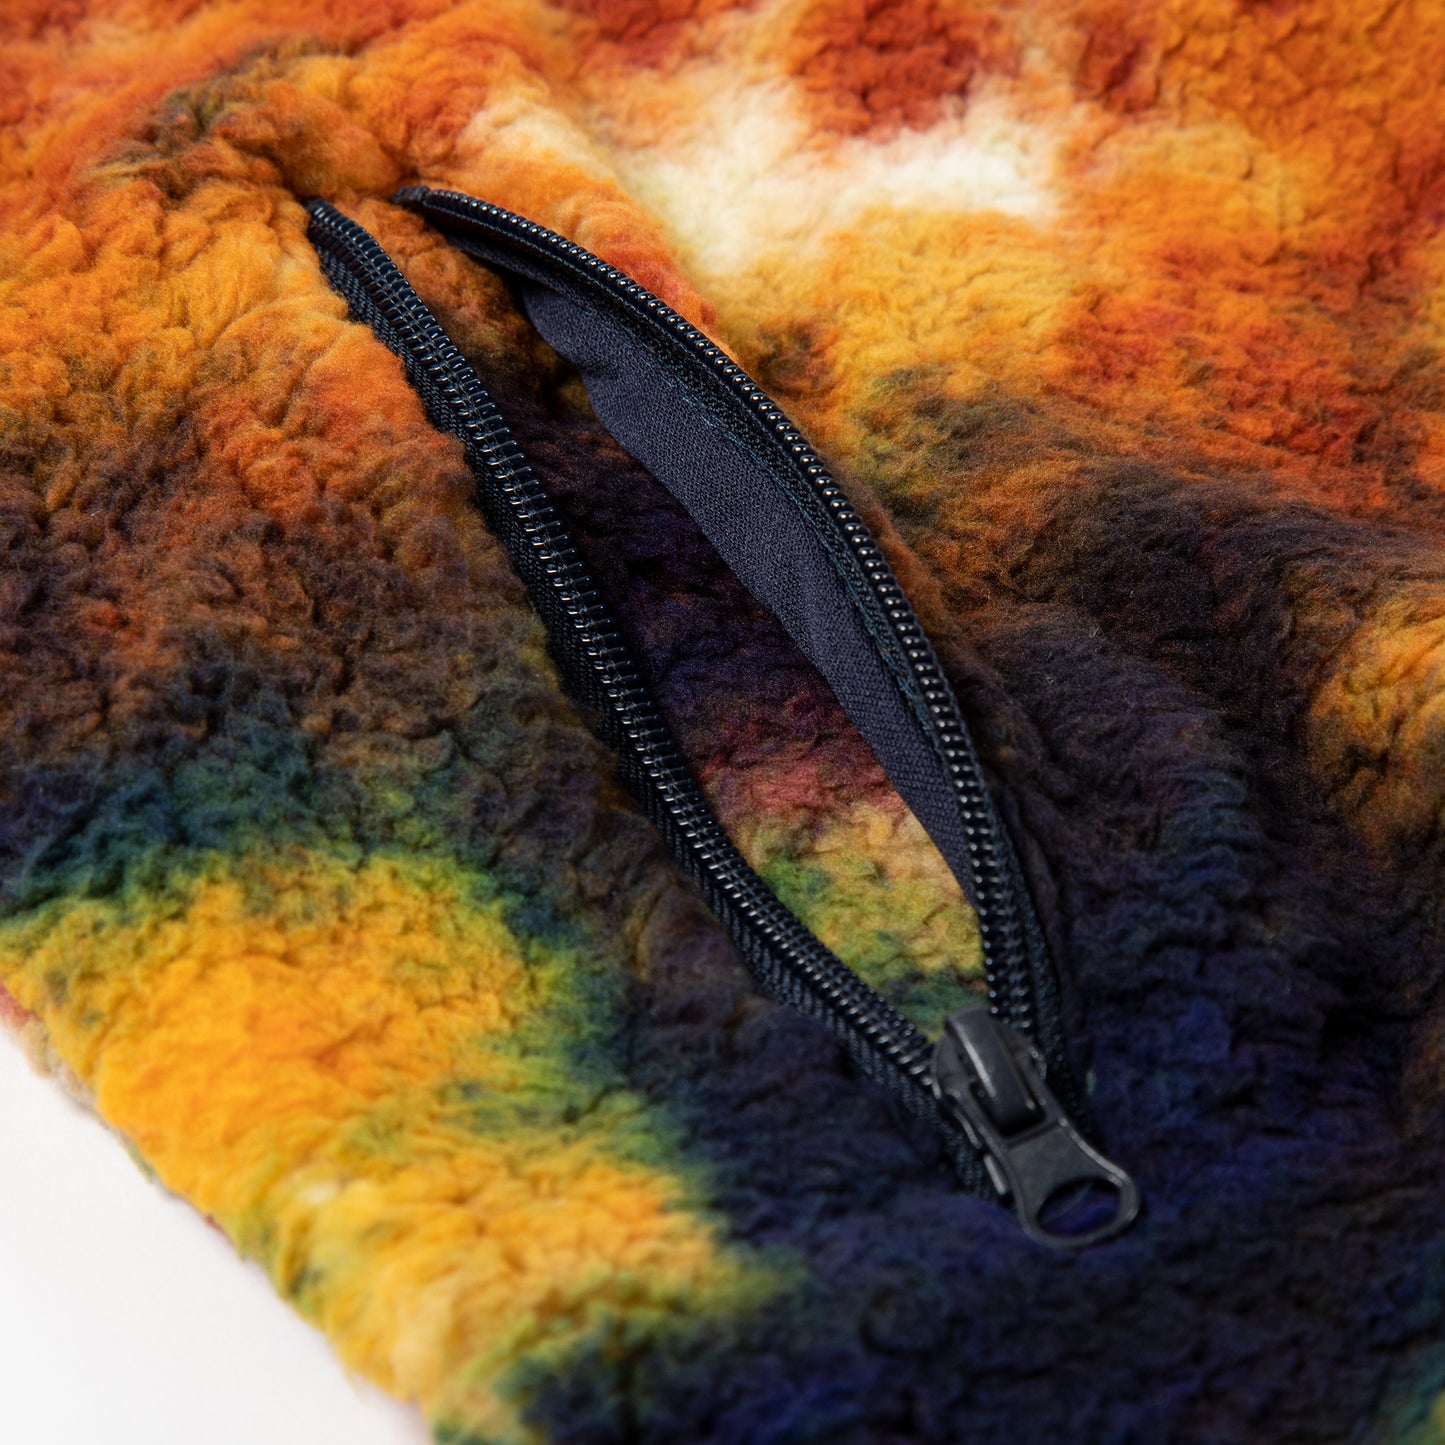 Rainbow Tie-Dye Sherpa Fleece Jacket